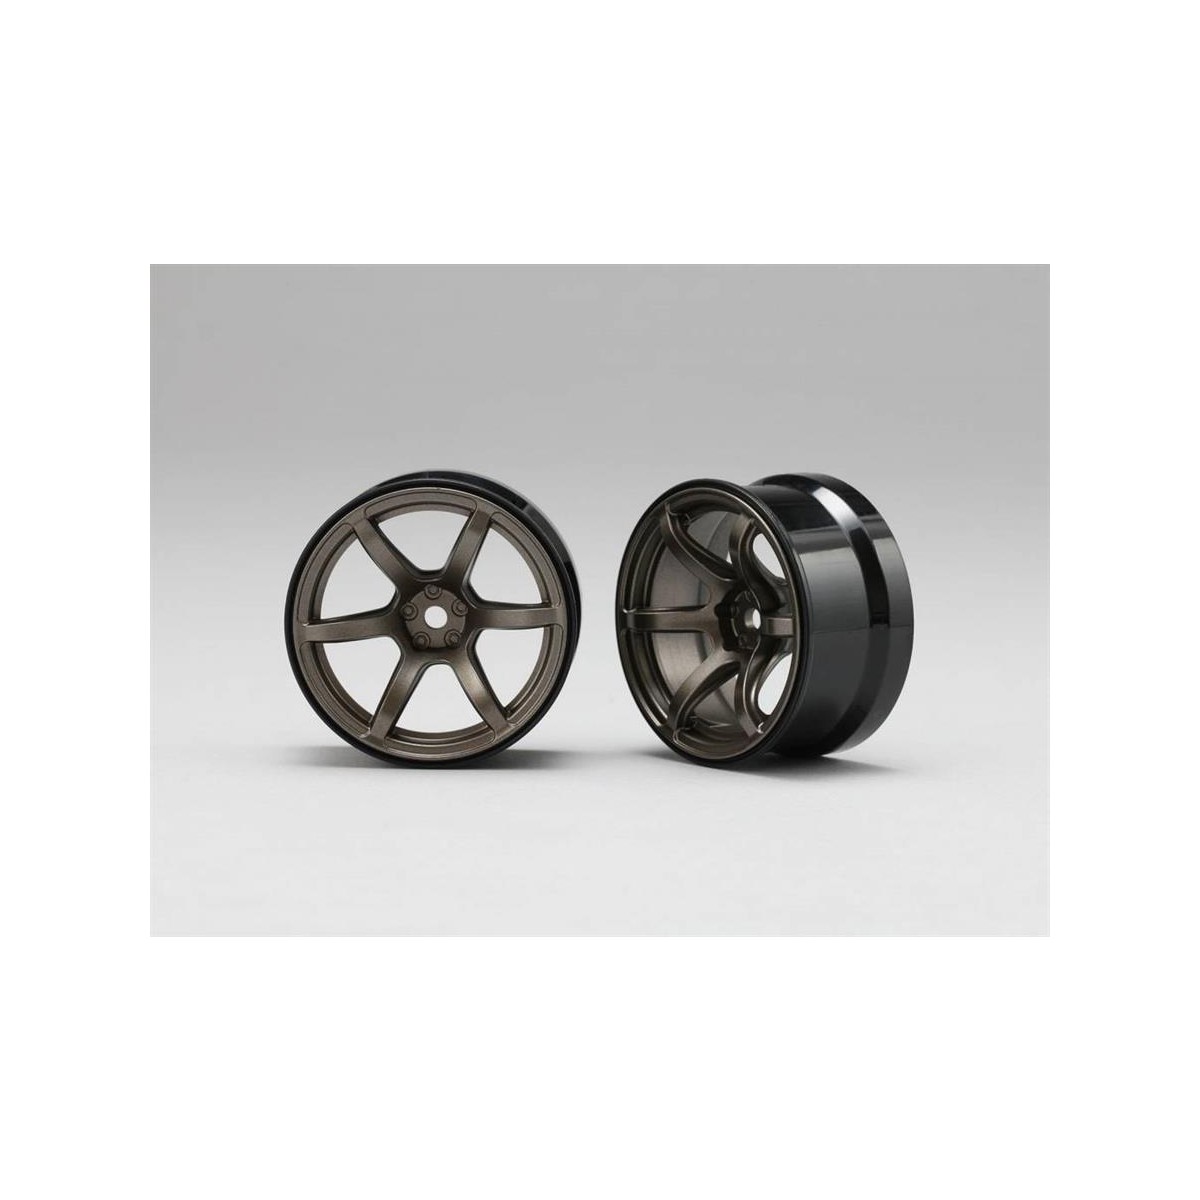 Drift wheels. Yokomo колесные диски Yokomo Drift Volk Racing. RC Drift Wheels 2 Color 6 spokes. Yokomo led Wheel. Диски BRANEW 6-spoke.